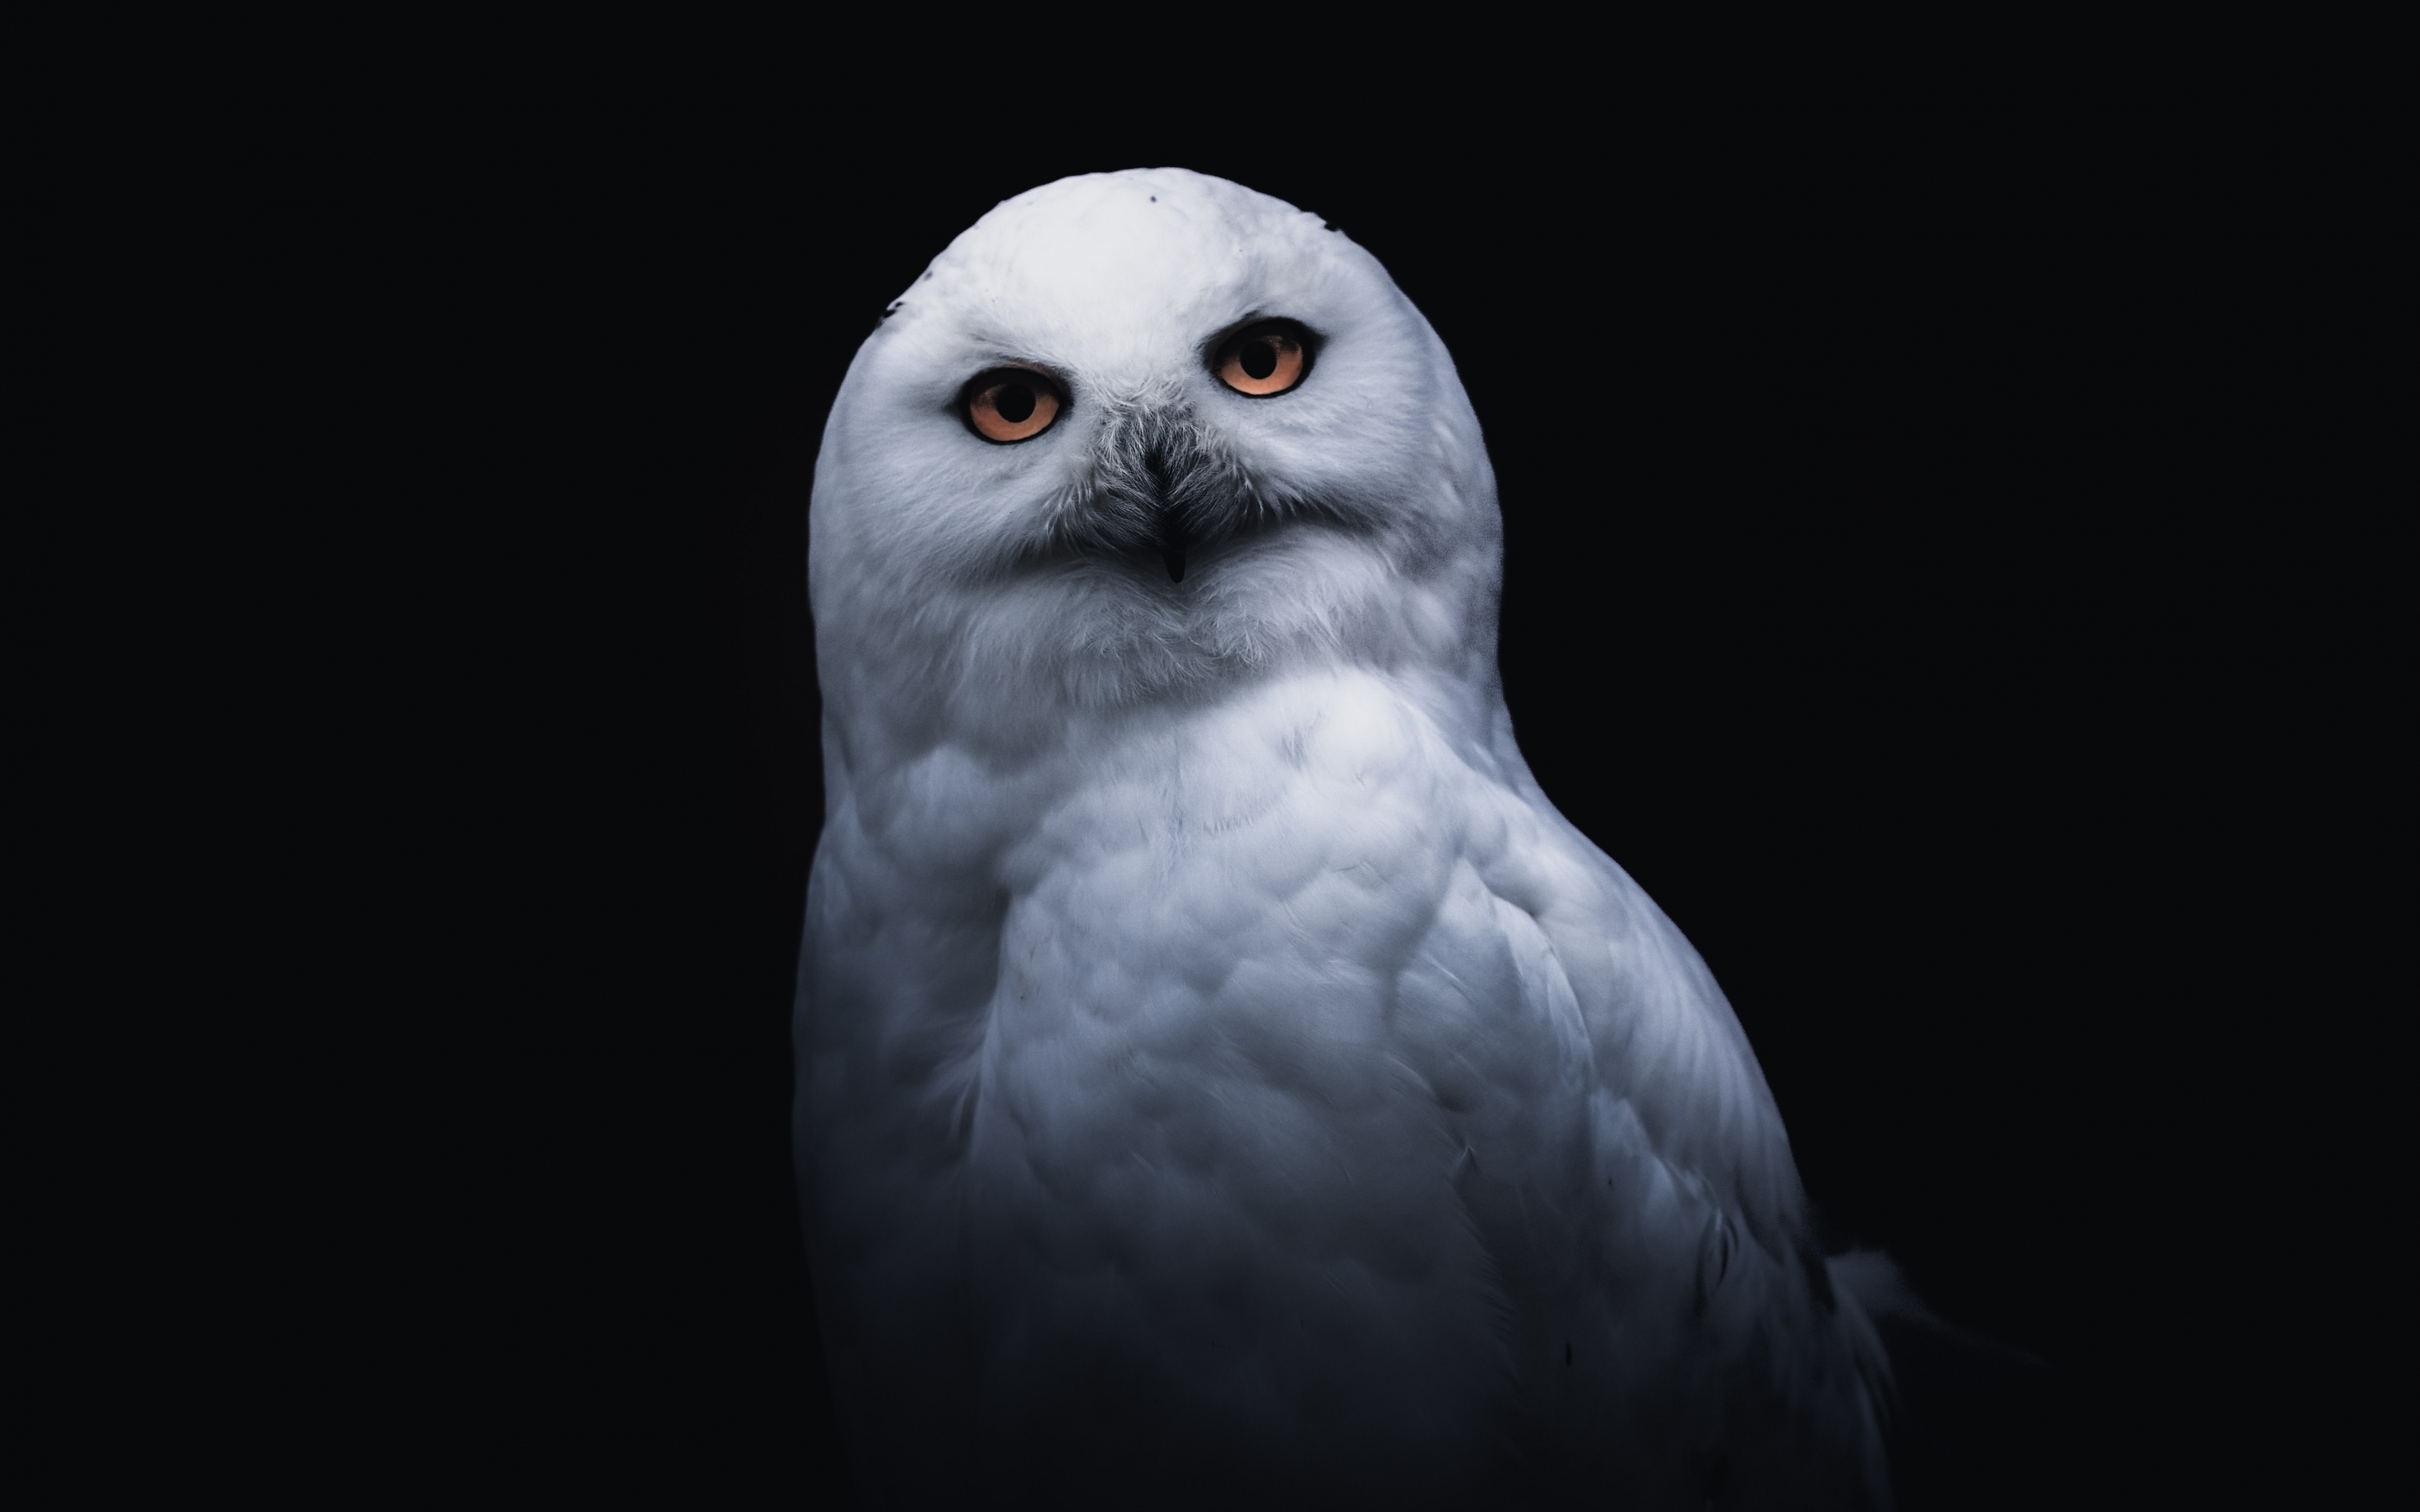 White owl, portrait, 2880x1800 wallpaper